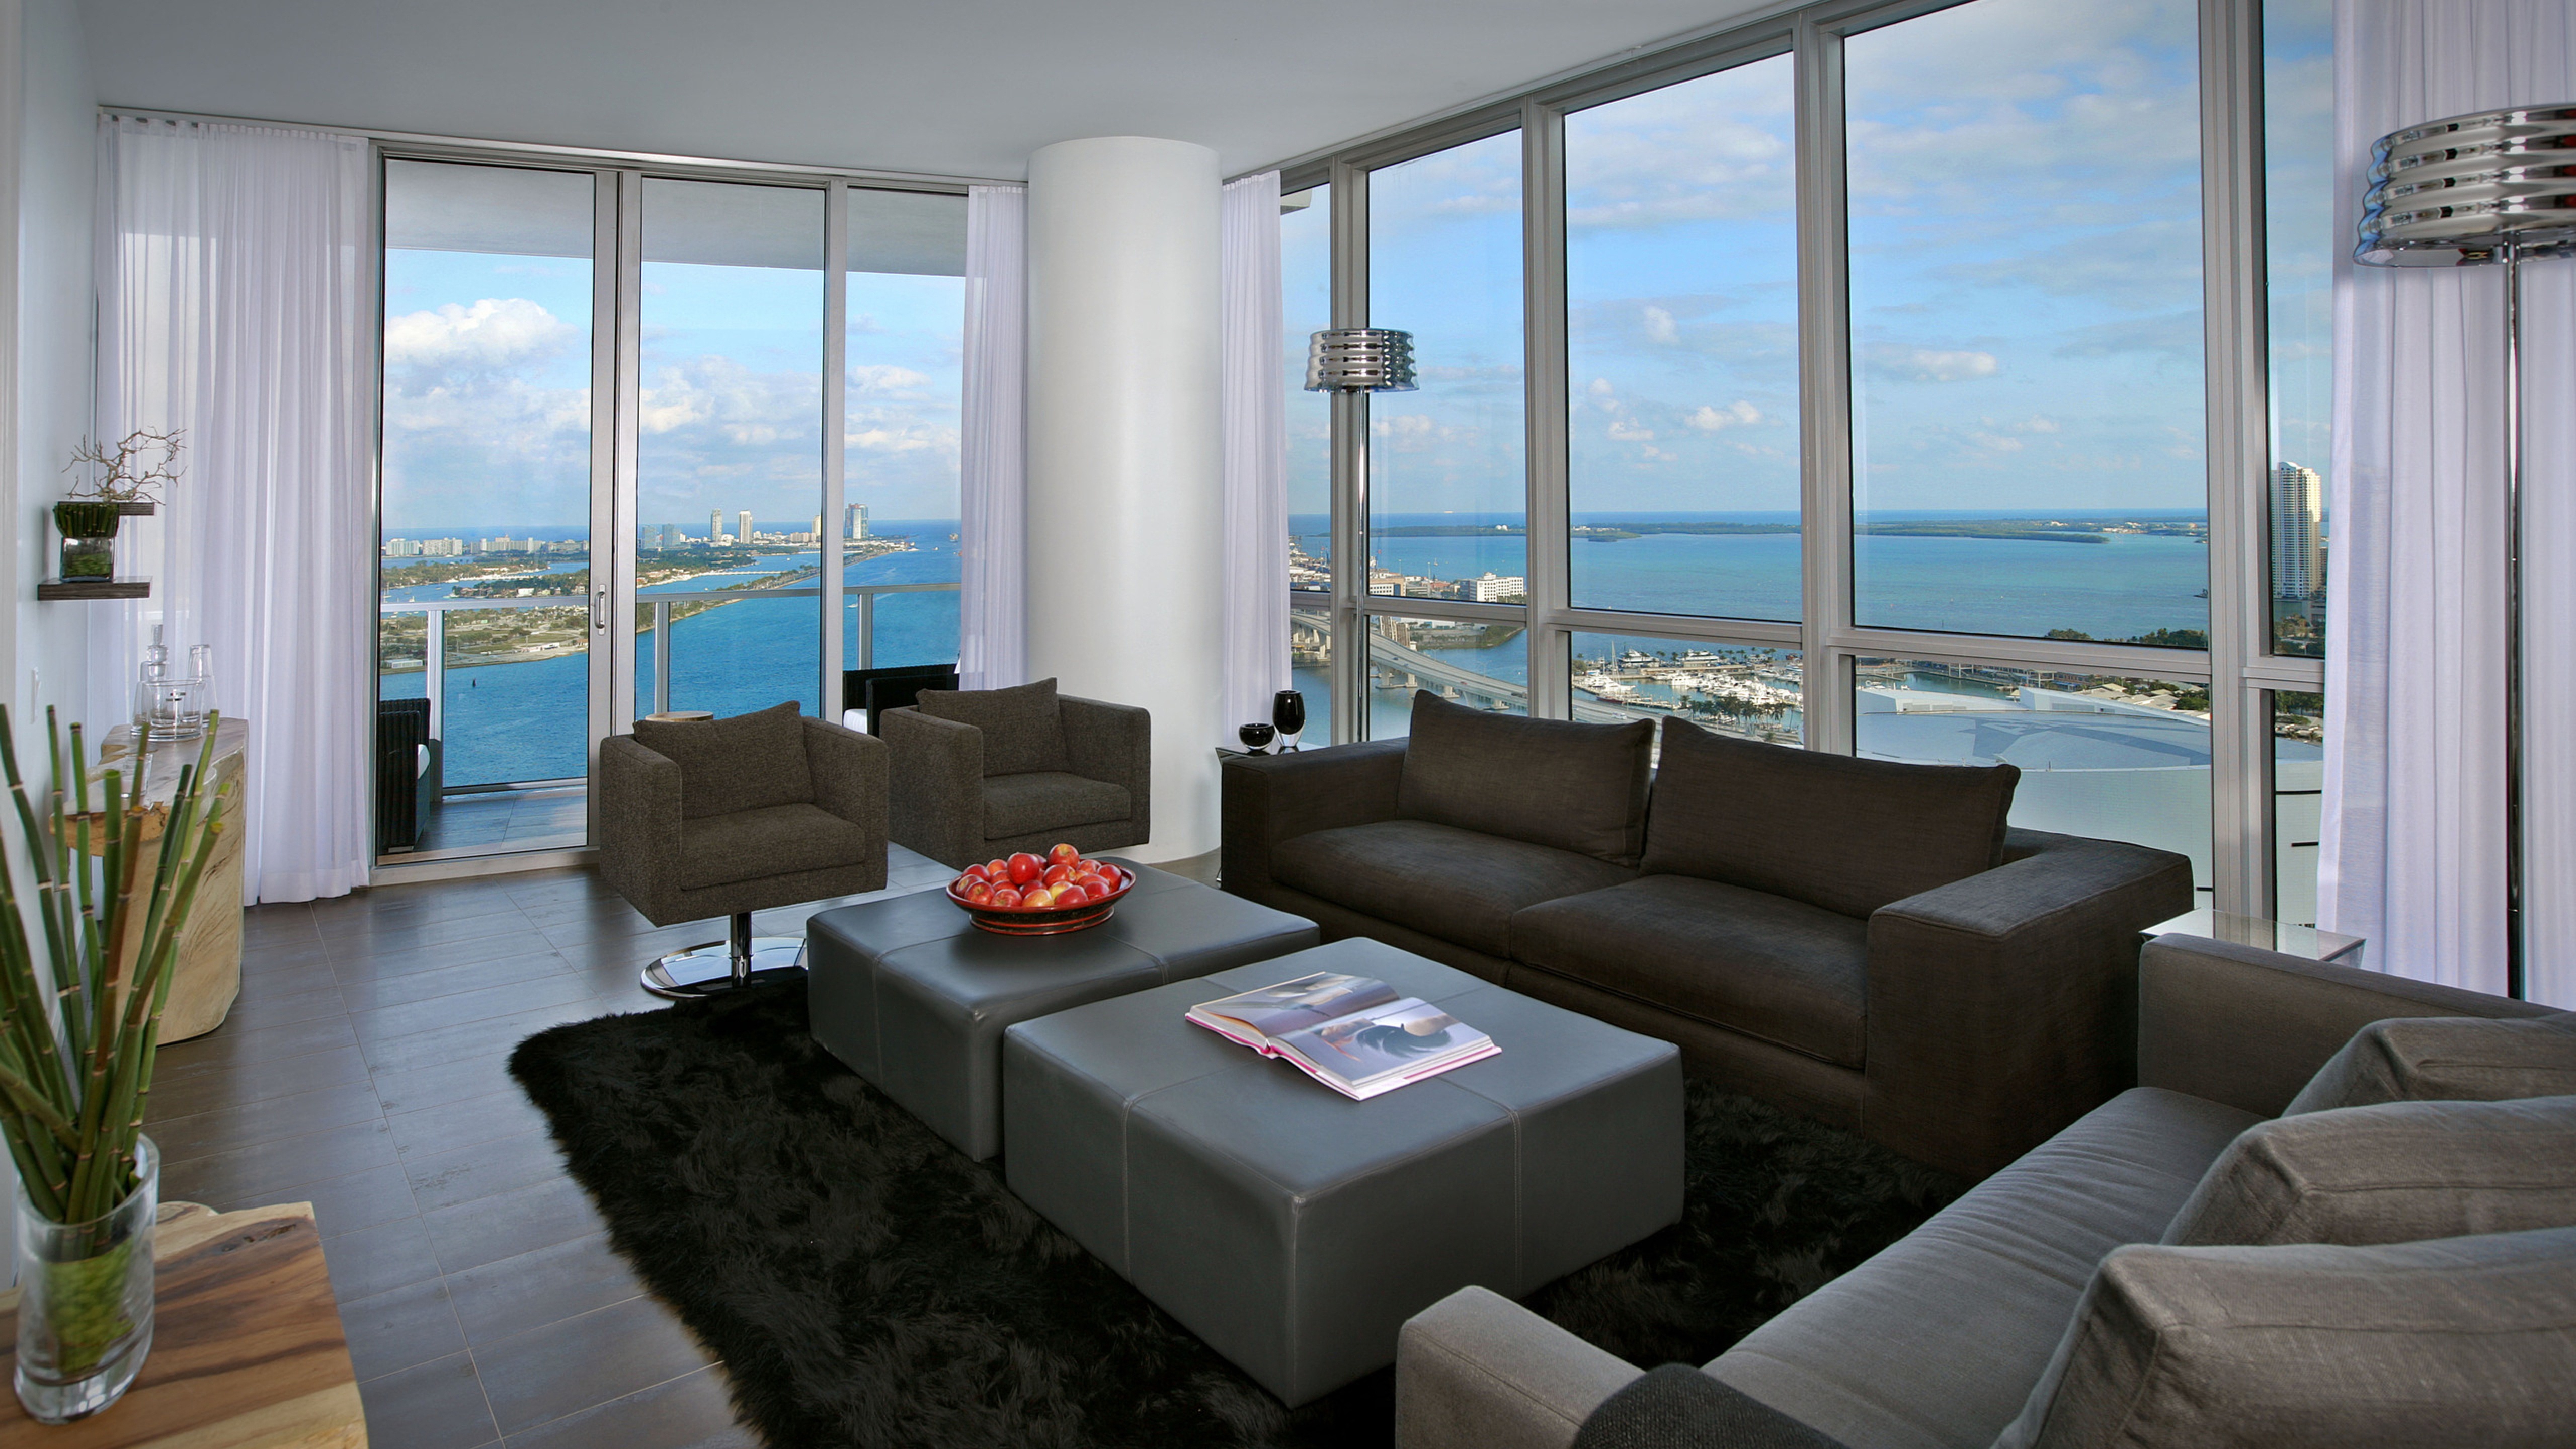 Виды квартир. Скай Ривер панорамные окна. Гостиная с панорамным видом. Квартира с панорамными окнами. Гостиная с видом на море.